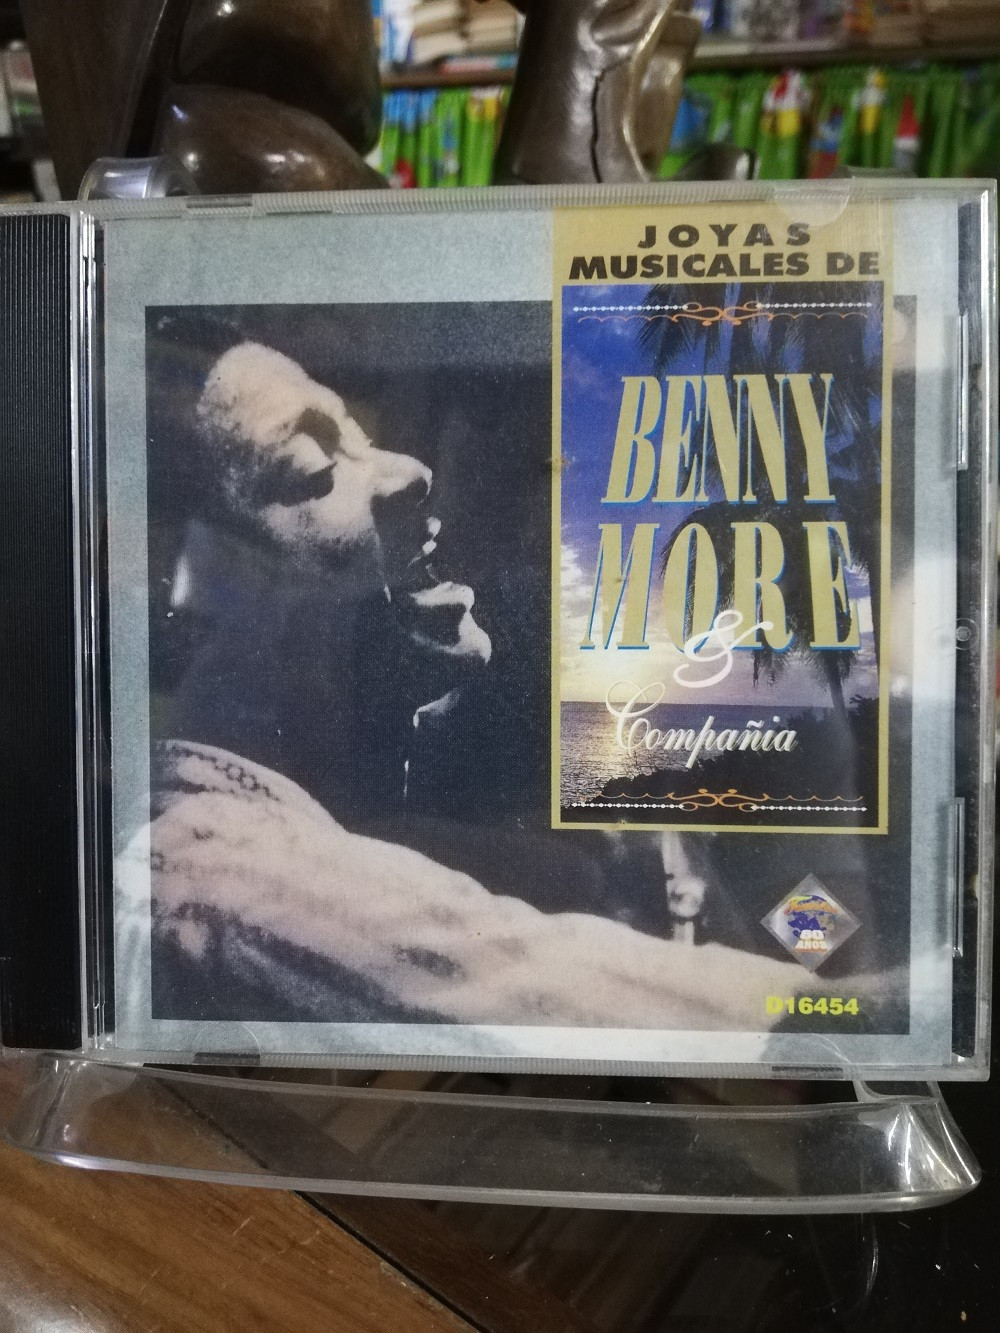 Imagen CD BENNY MORÉ & COMPAÑIA - JOYAS MUSICALES 1